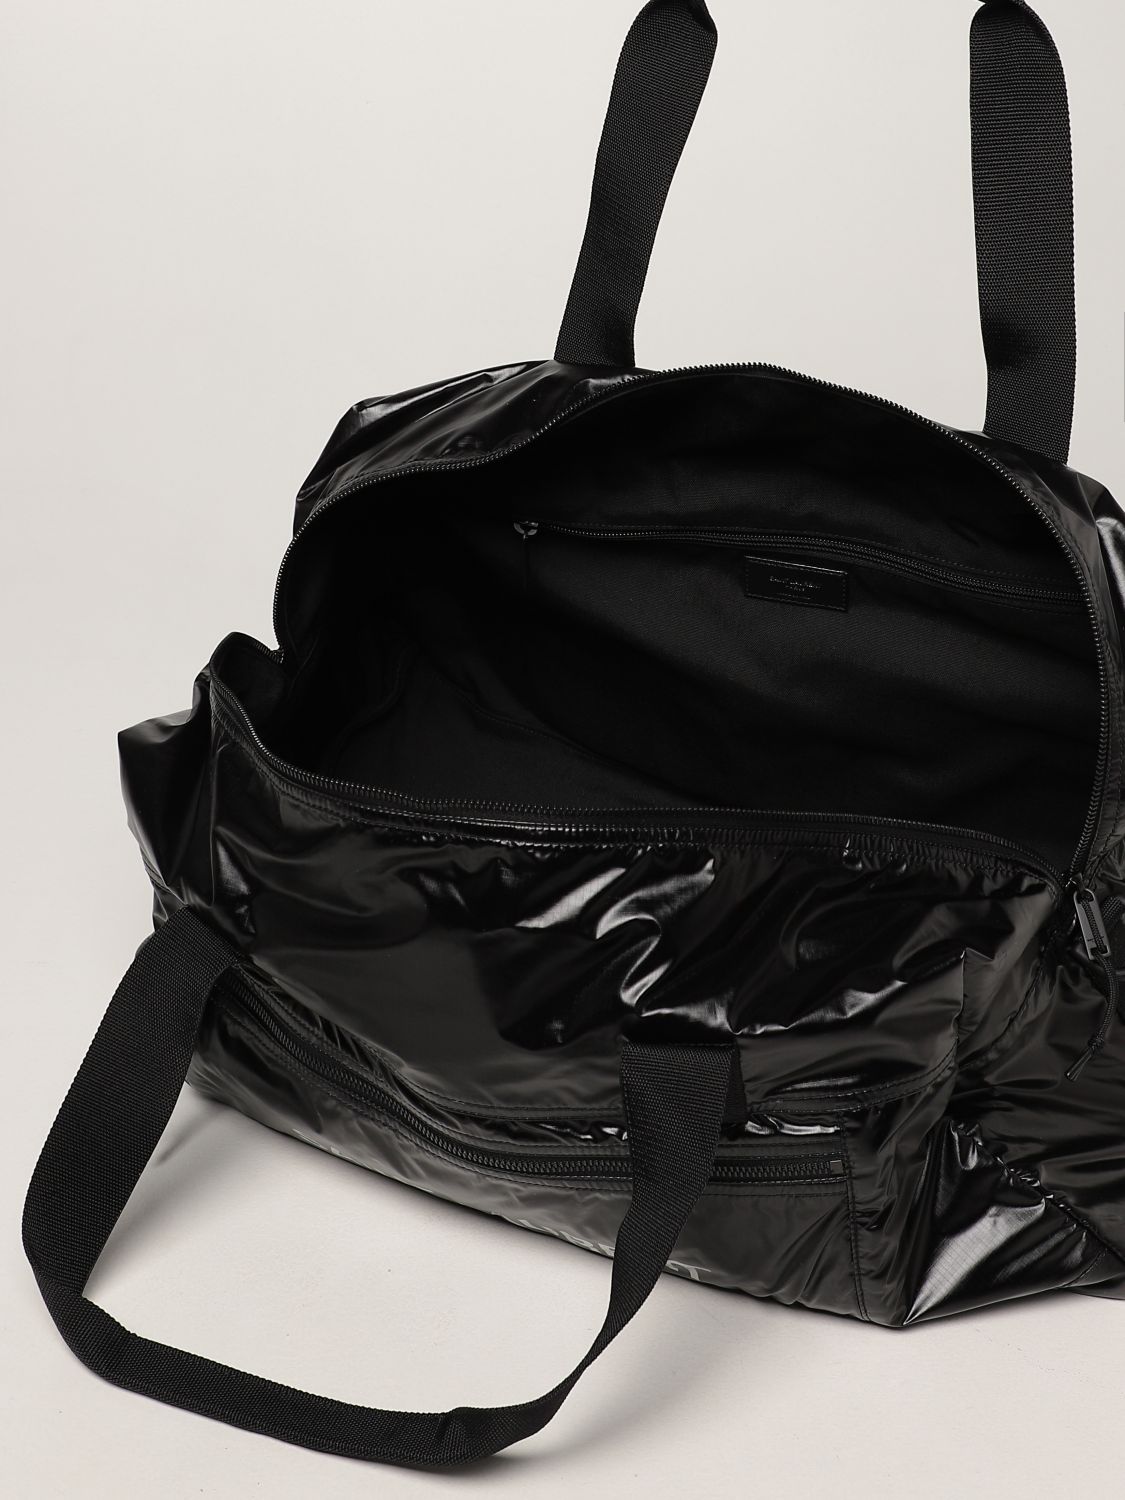 Travel bag Saint Laurent: Saint Laurent Nuxx Duffle bag in nylon black 5